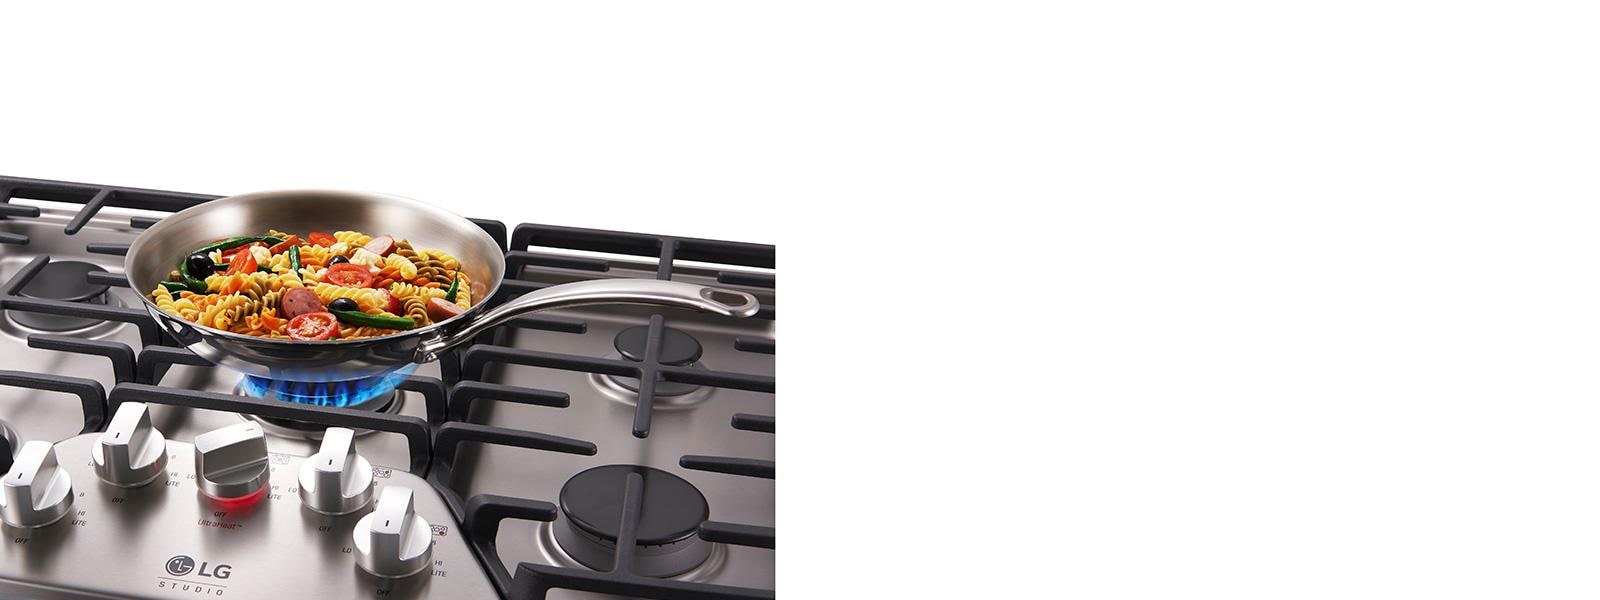 LG Studio 36 UltraHeat™ Gas Cooktop with EasyClean®